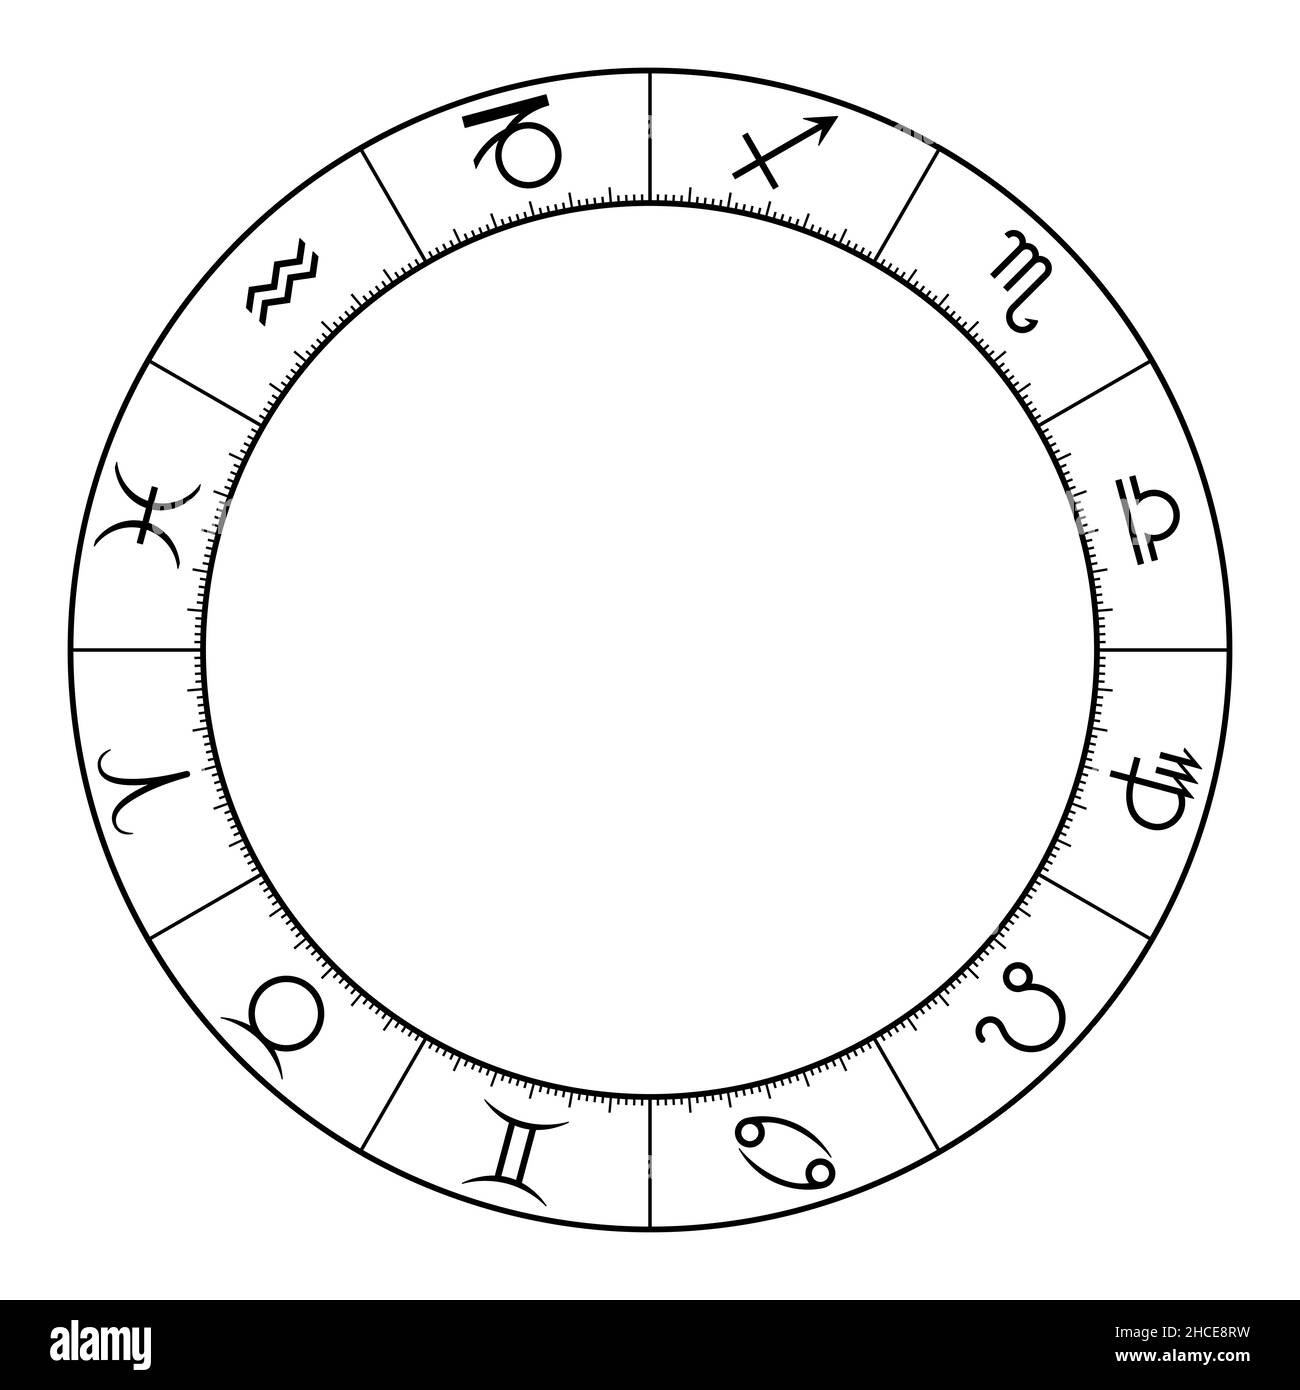 Cerchio zodiaco, che mostra i dodici segni stellari, utilizzati in astrologia oroscopica. Ruota moderna dello zodiaco con simboli e divisione e scala a 360 gradi. Foto Stock